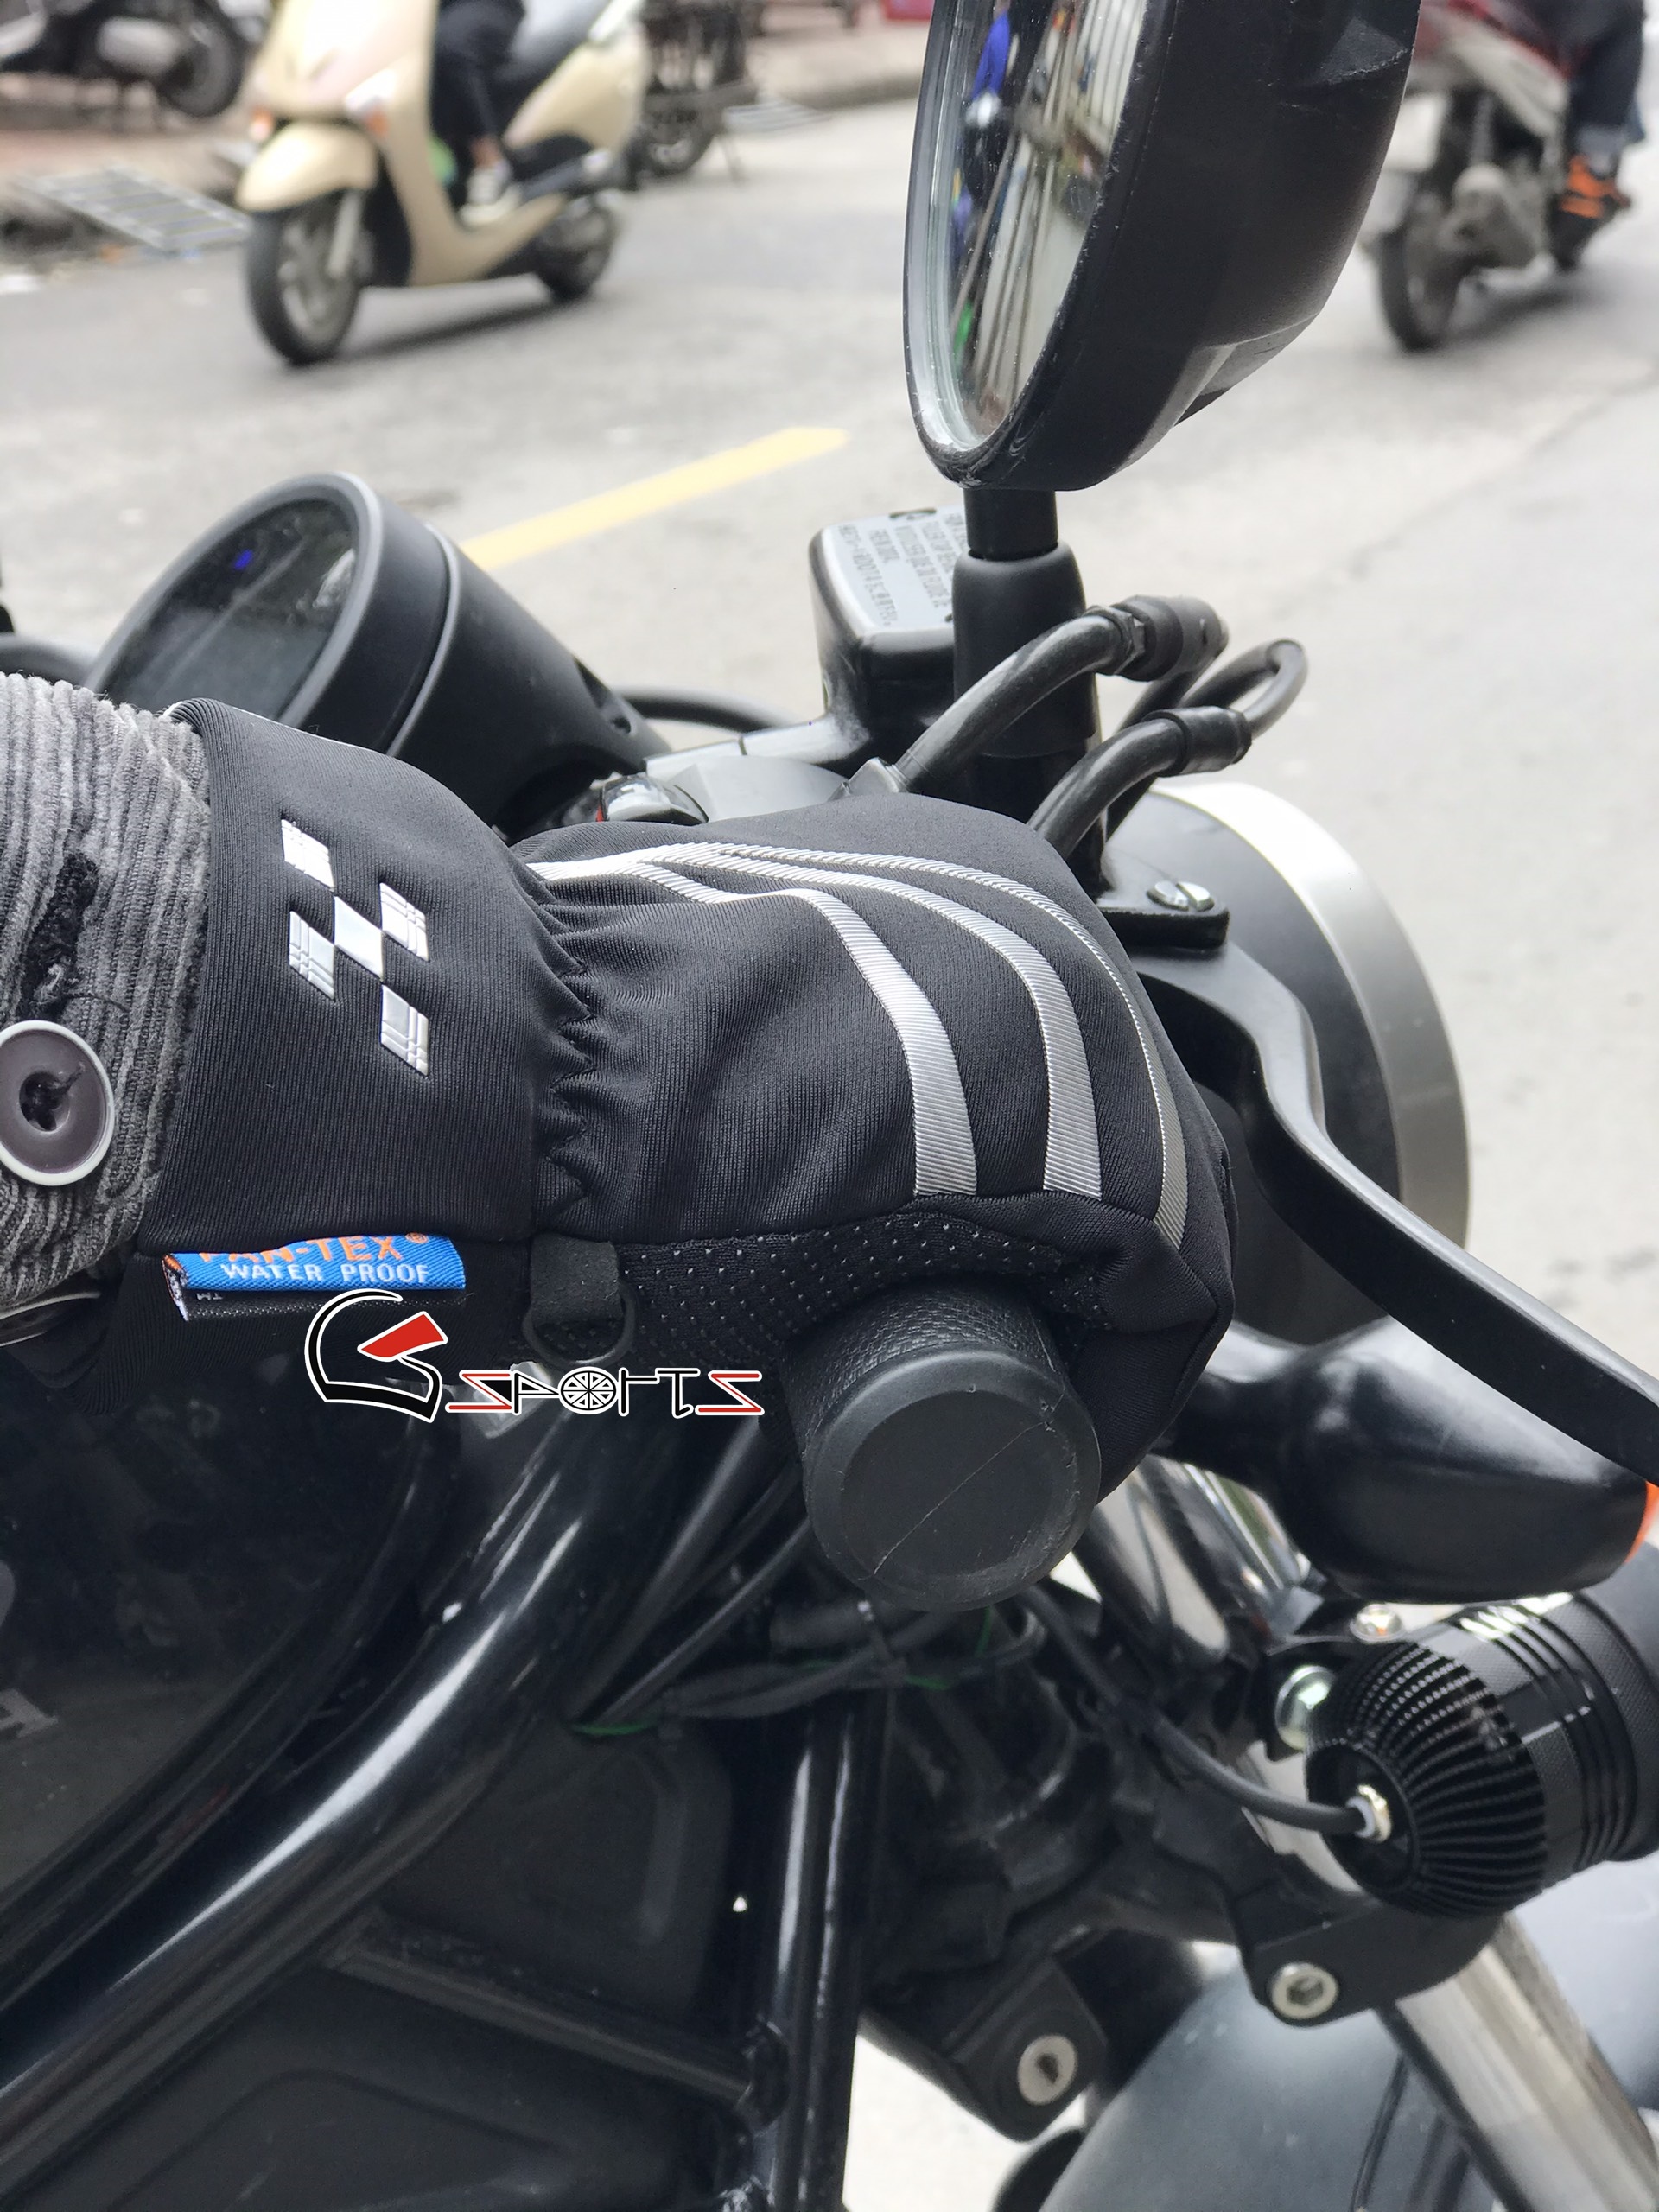 Địa chỉ mua găng tay xe máy uy tín, chất lượng ở Hà Nội